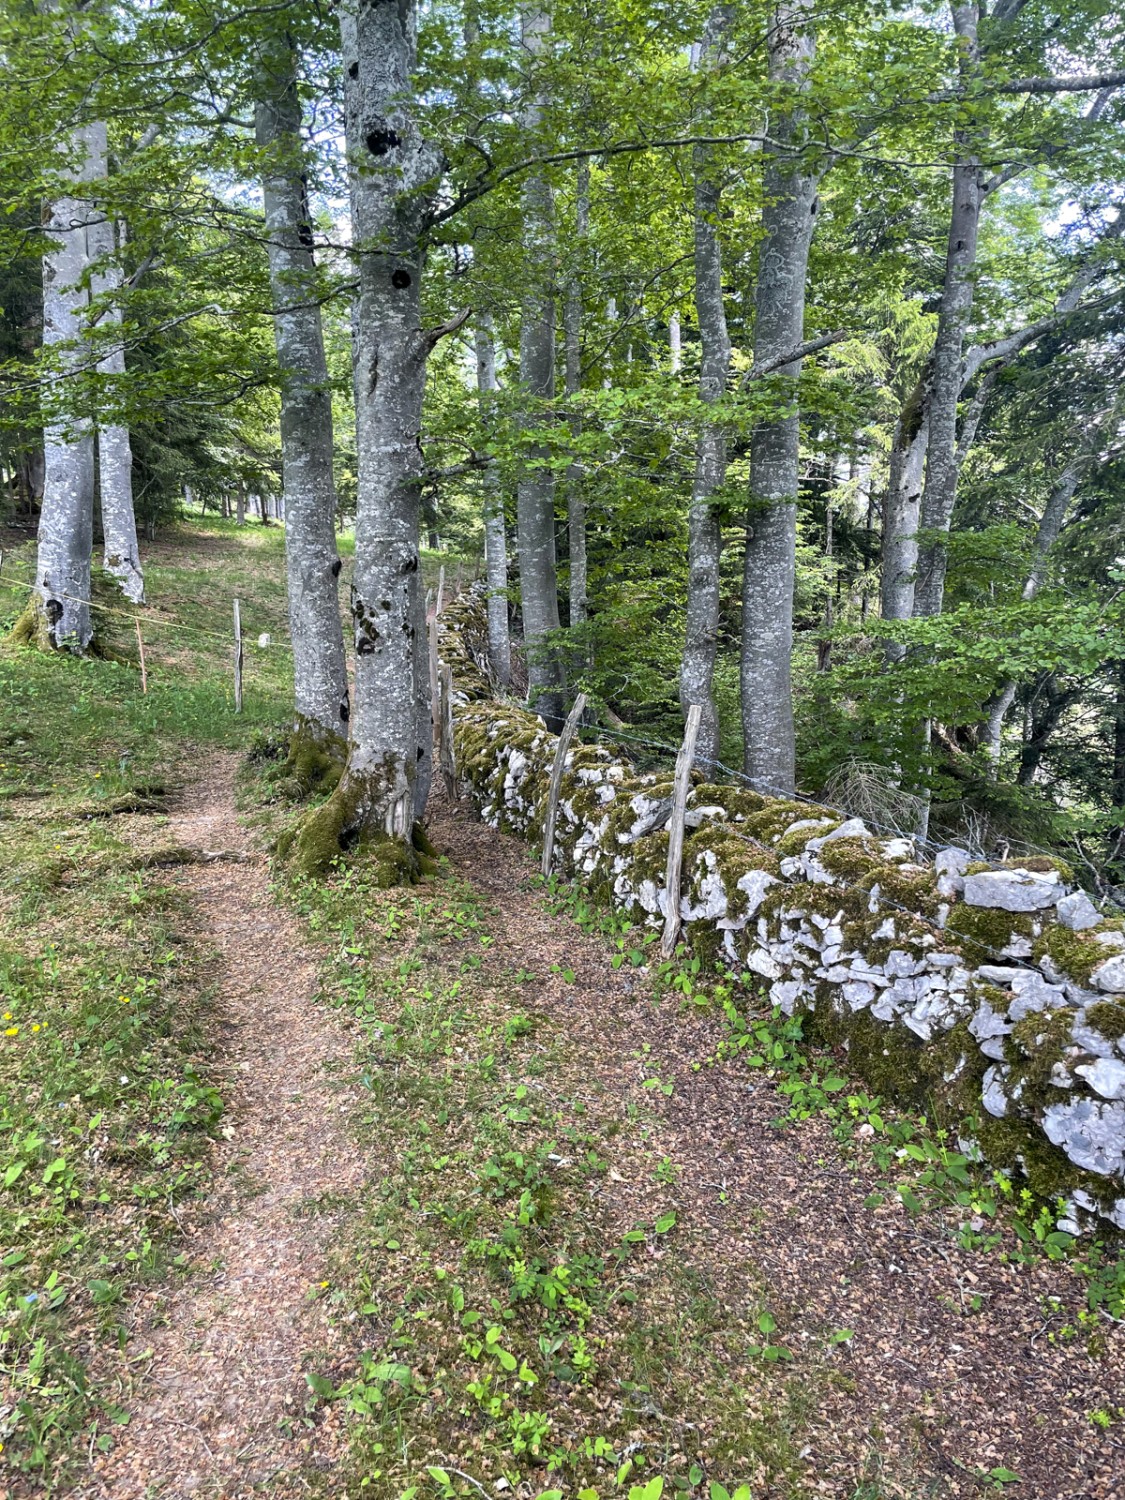 Traditionelle Trockenmauern trennen die Weiden voneinander. Bild: Lukas Frehner